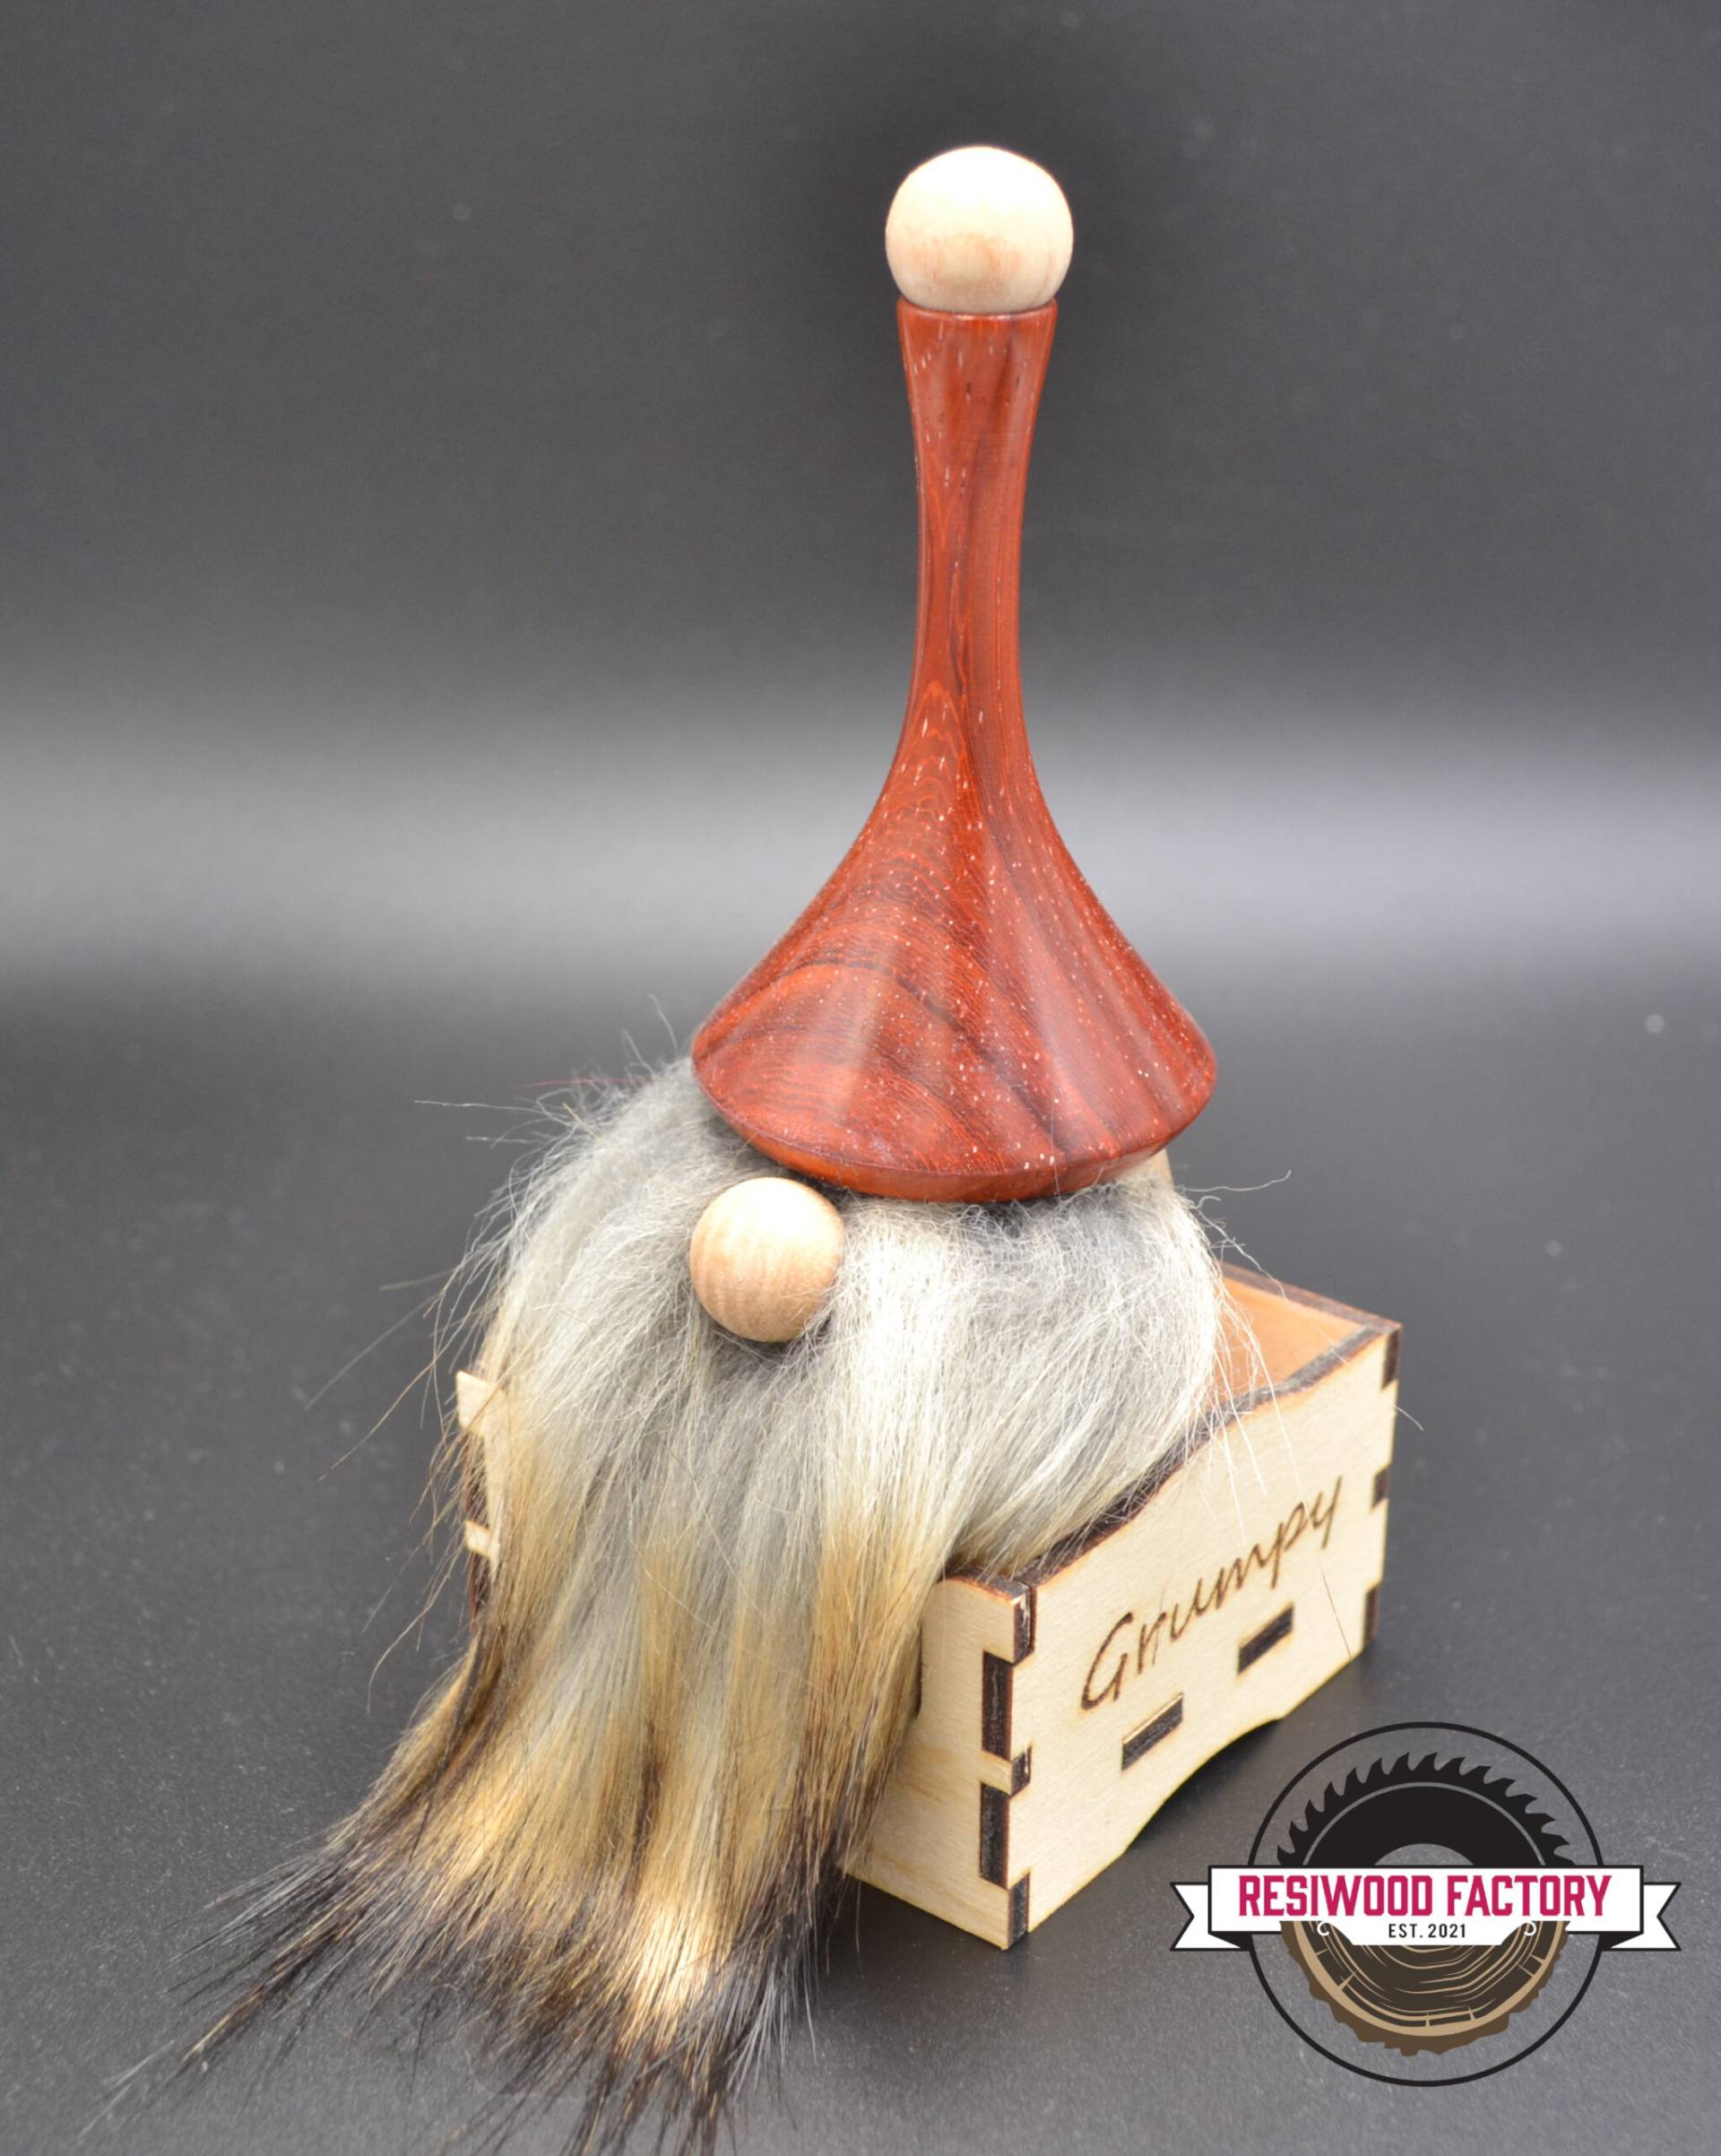 "Nisses" nommé Grumpy (Gnome) en bois